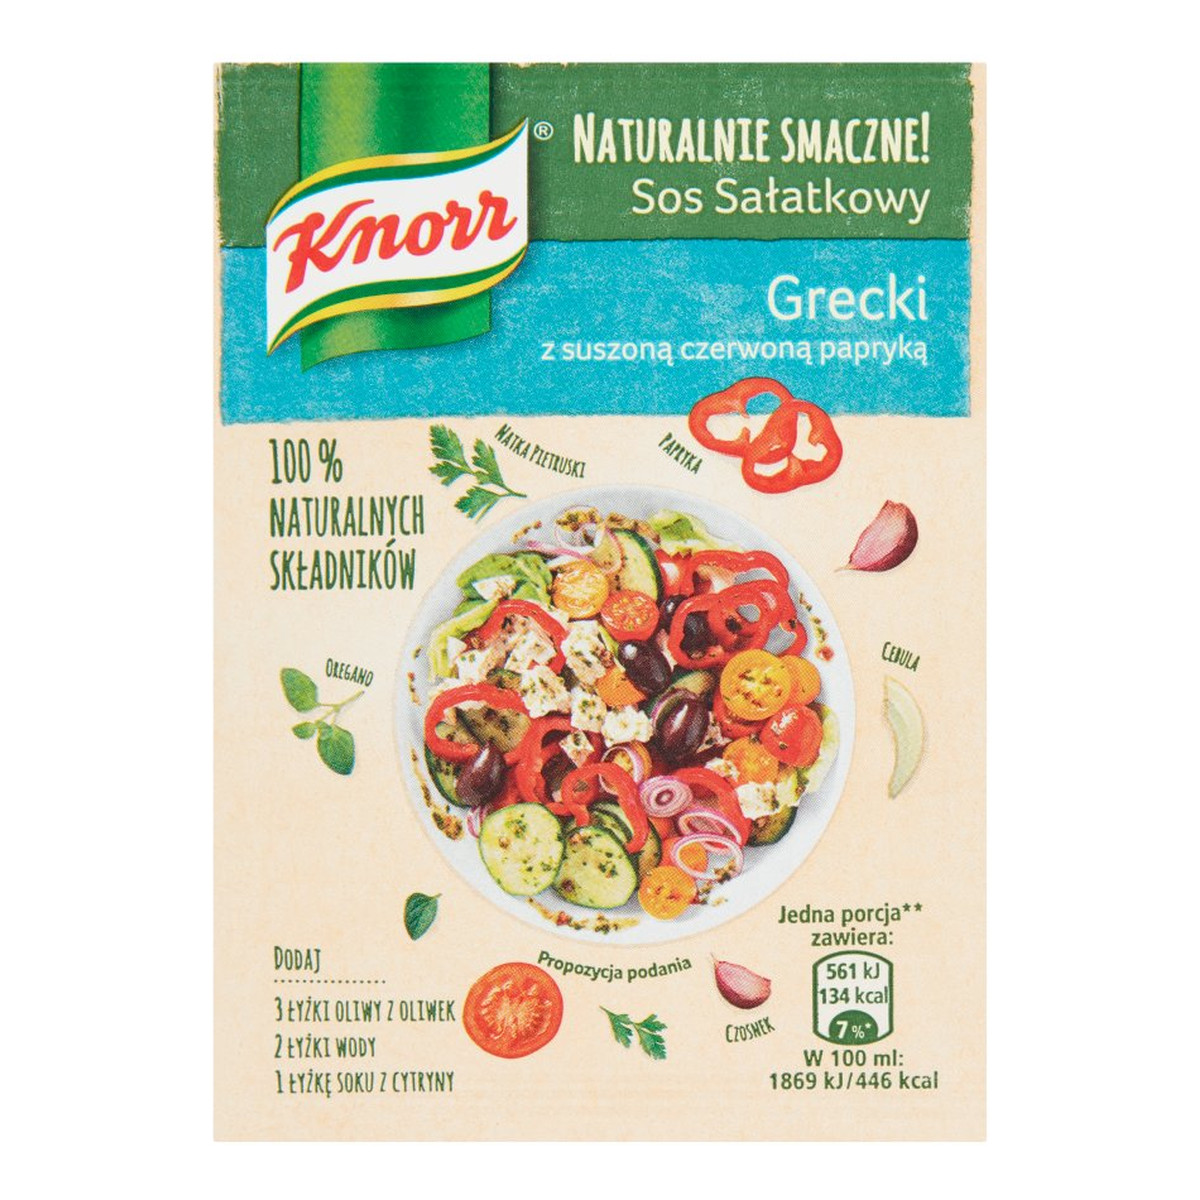 Knorr Naturalnie Smaczne! sos sałatkowy Grecki z suszoną czerwoną papryką 7g